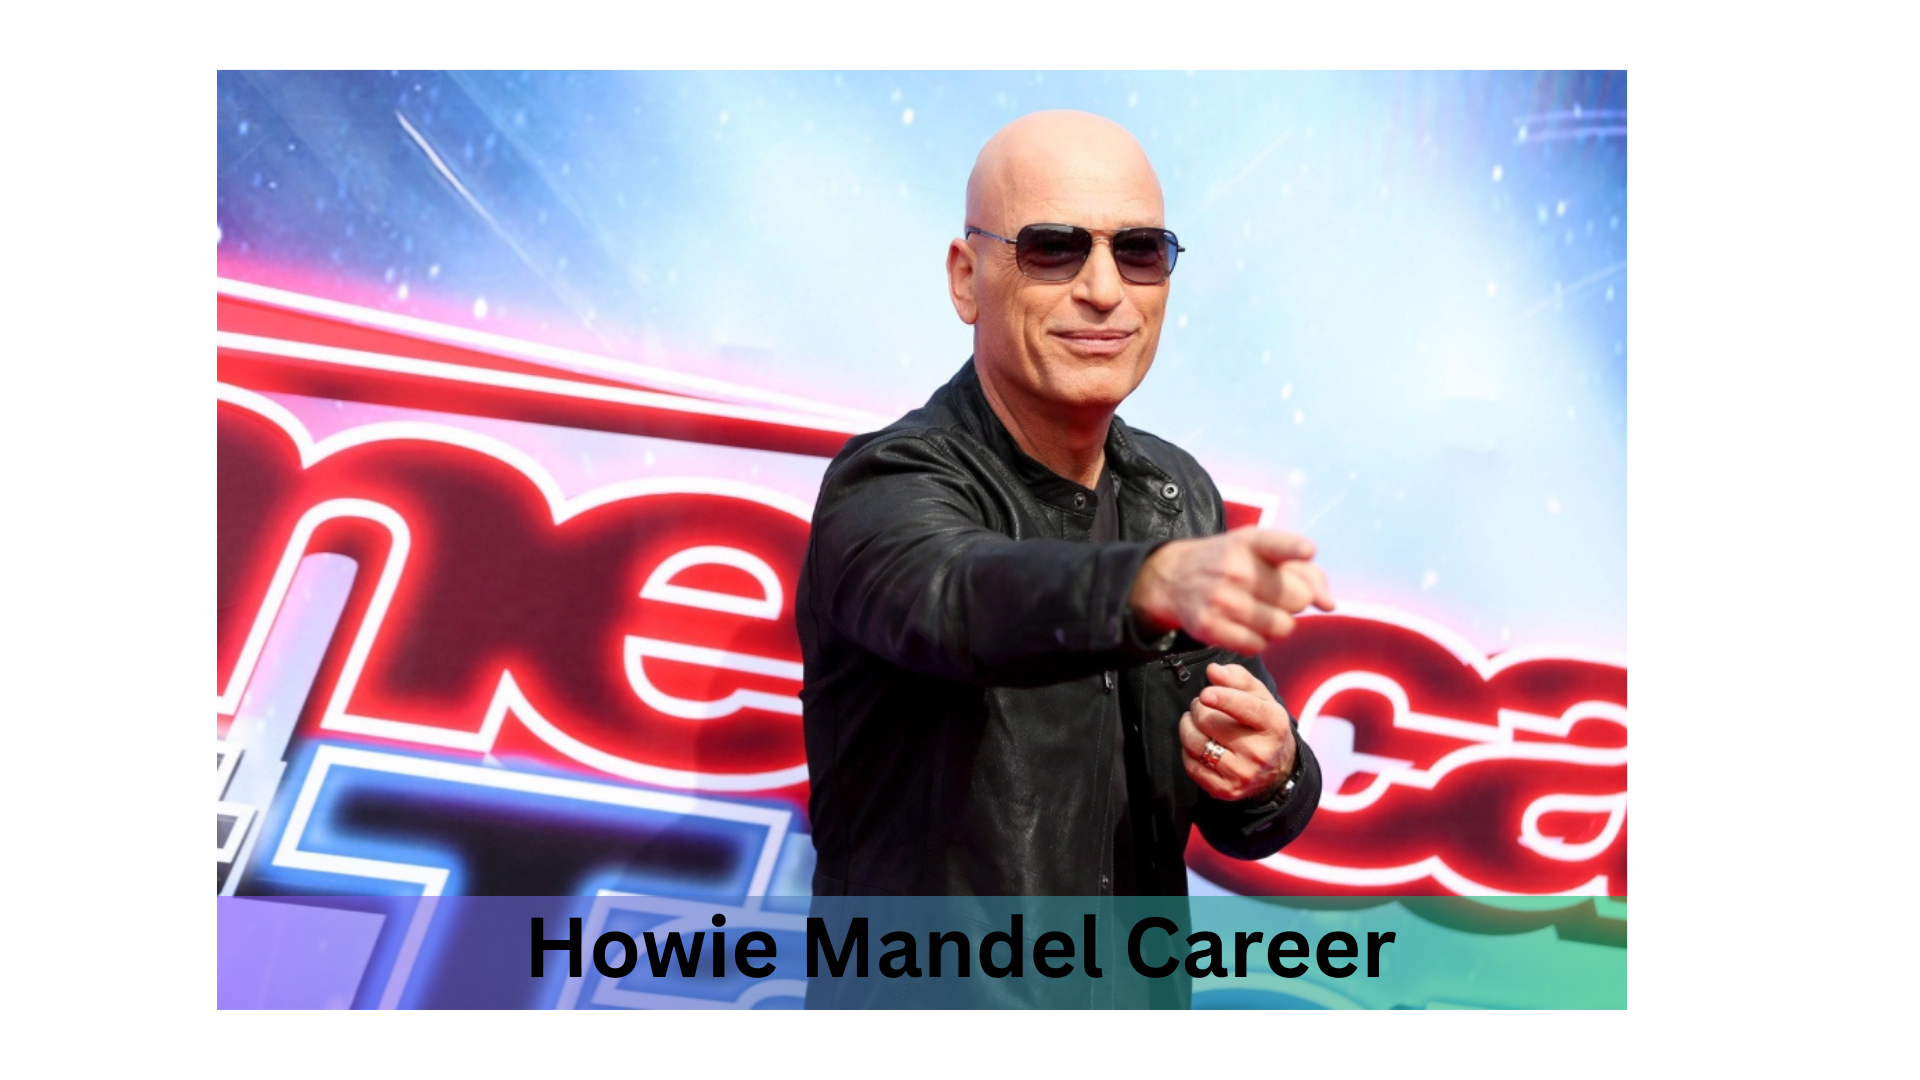 Howie Mandel Career